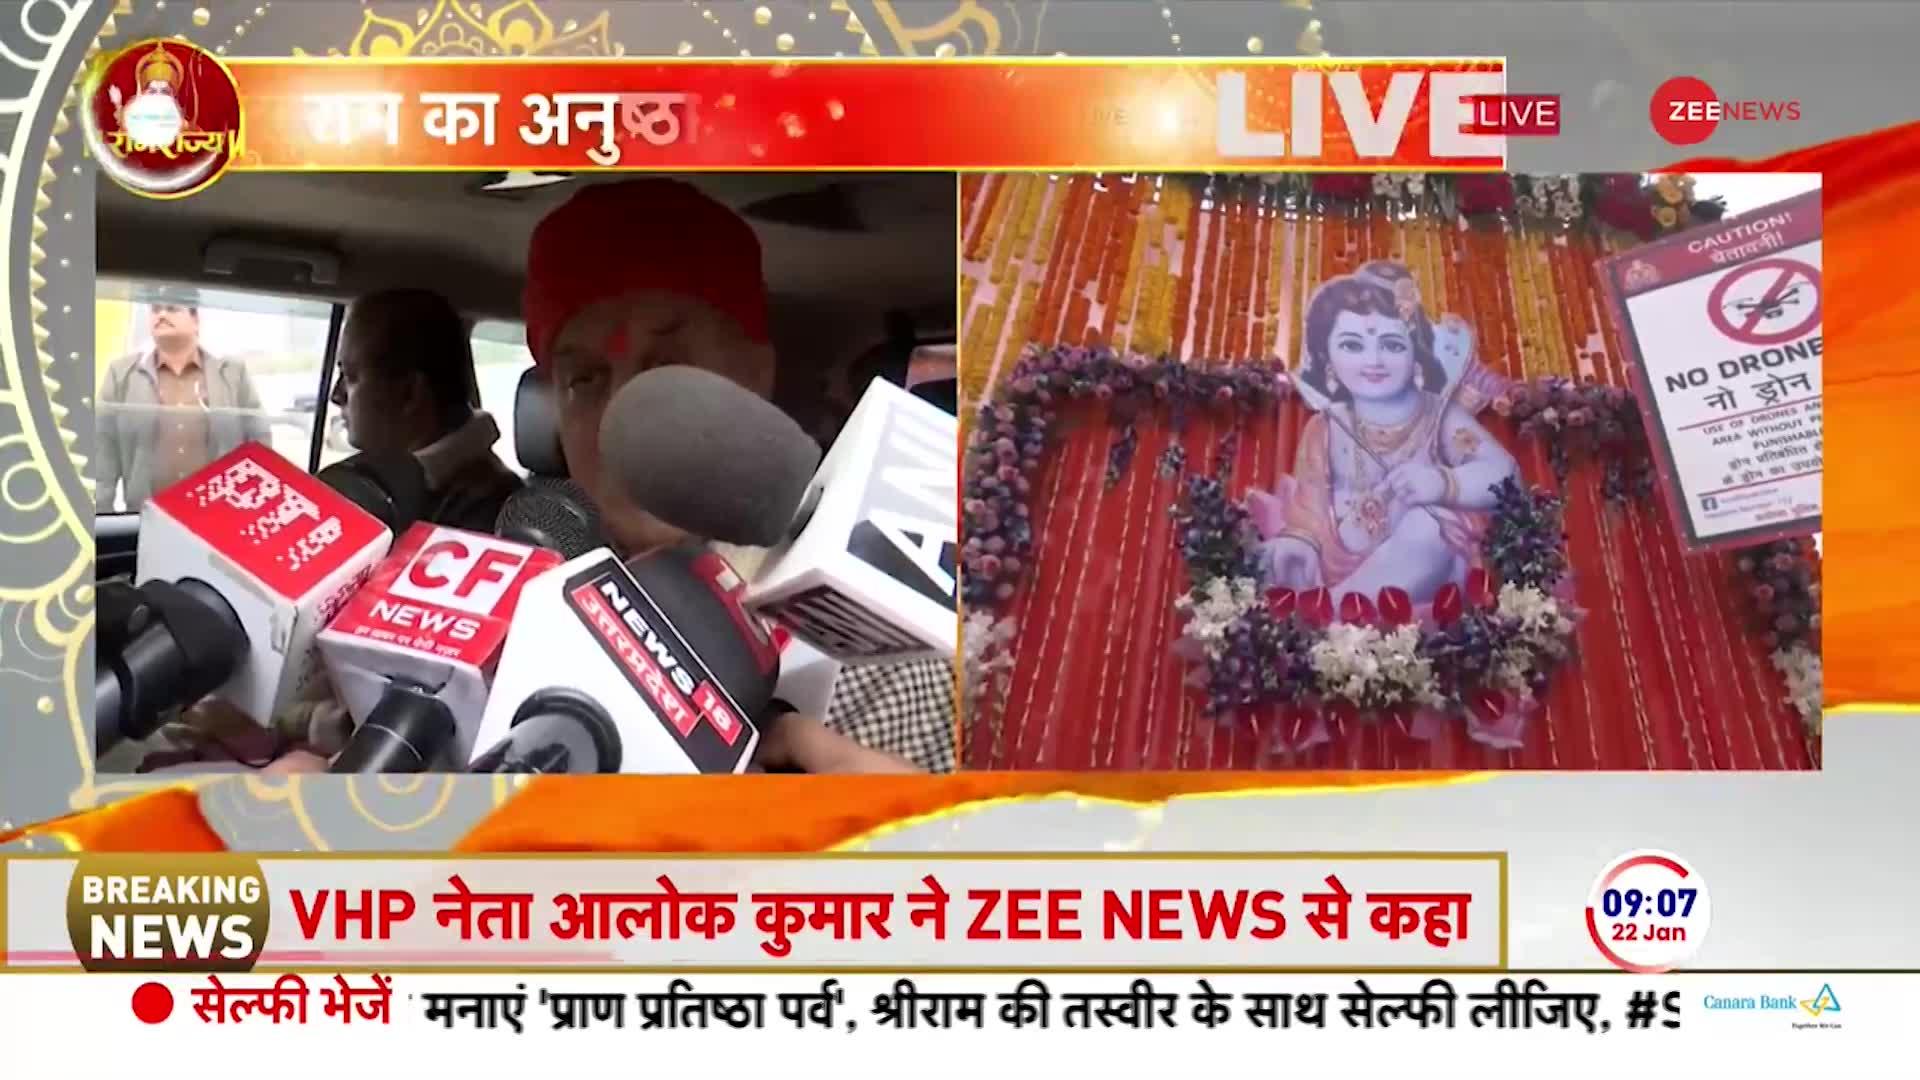 Ayodhya Ram Mandir LIVE updates: 'आज दिवाली है', प्राण प्रतिष्ठा पर अभिनेता अनुपम खेर का बयान